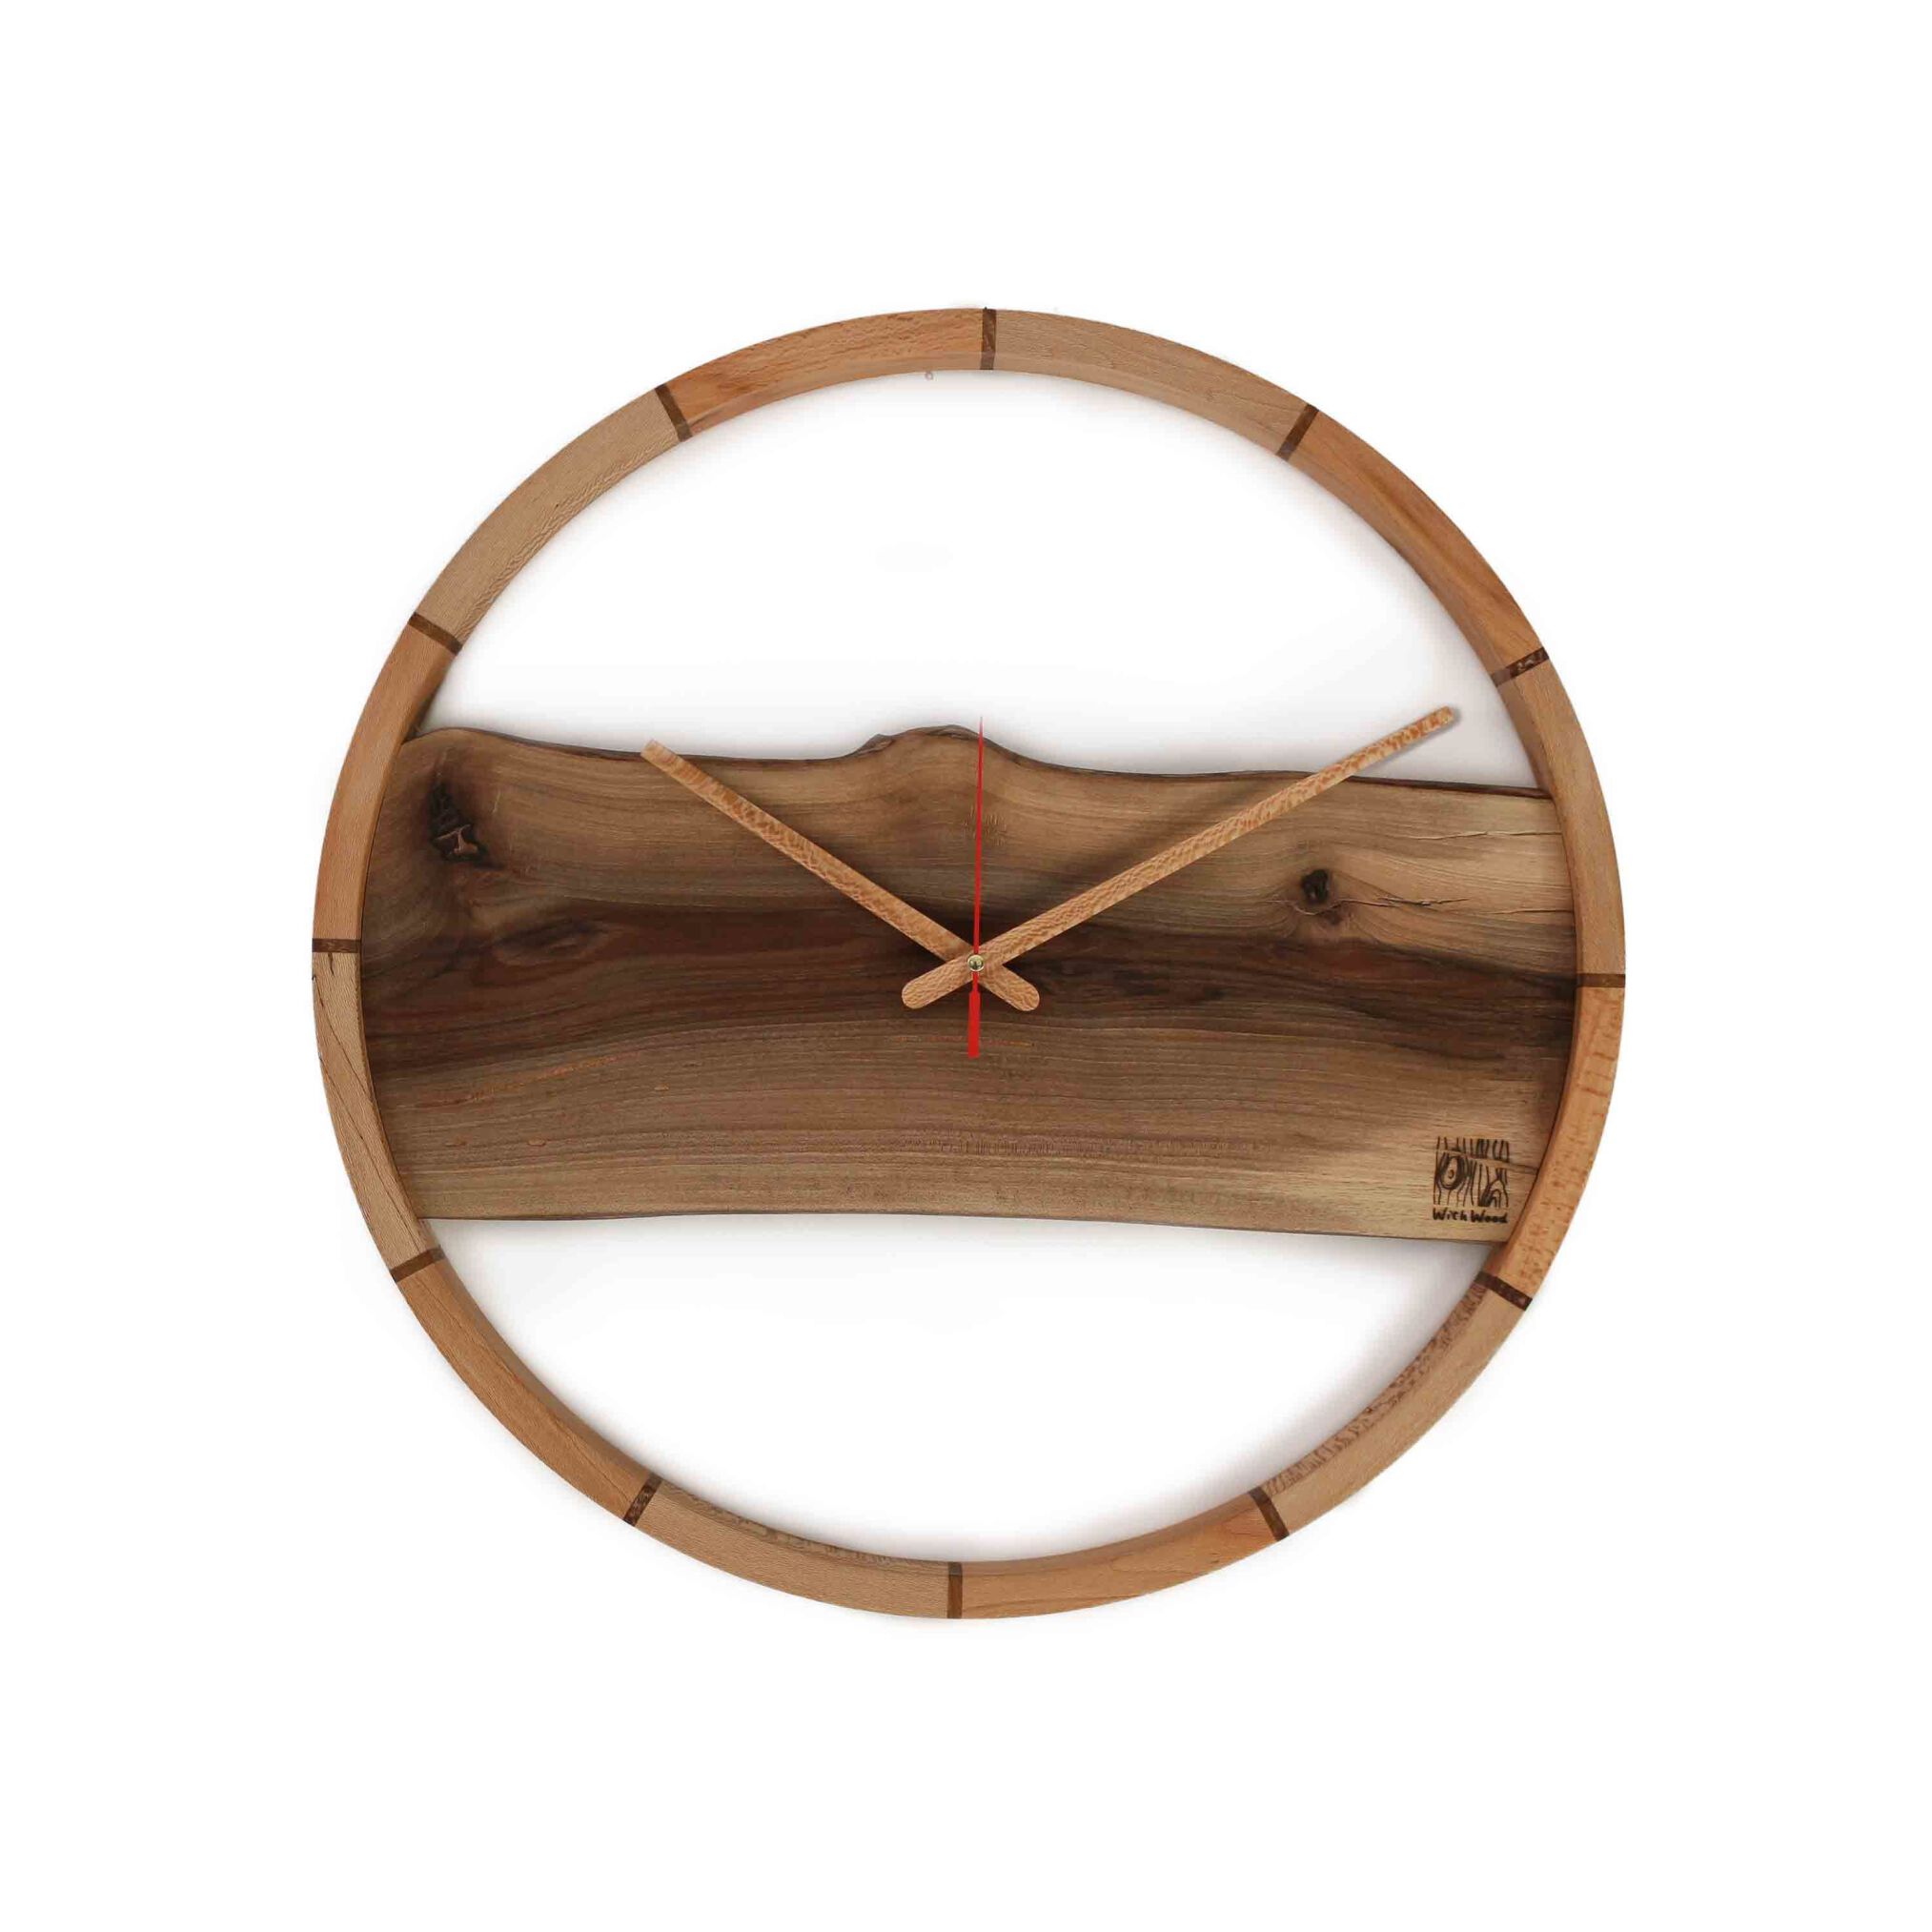  ساعت چوبی رینگ تمام چوب، ساعت کادویی 